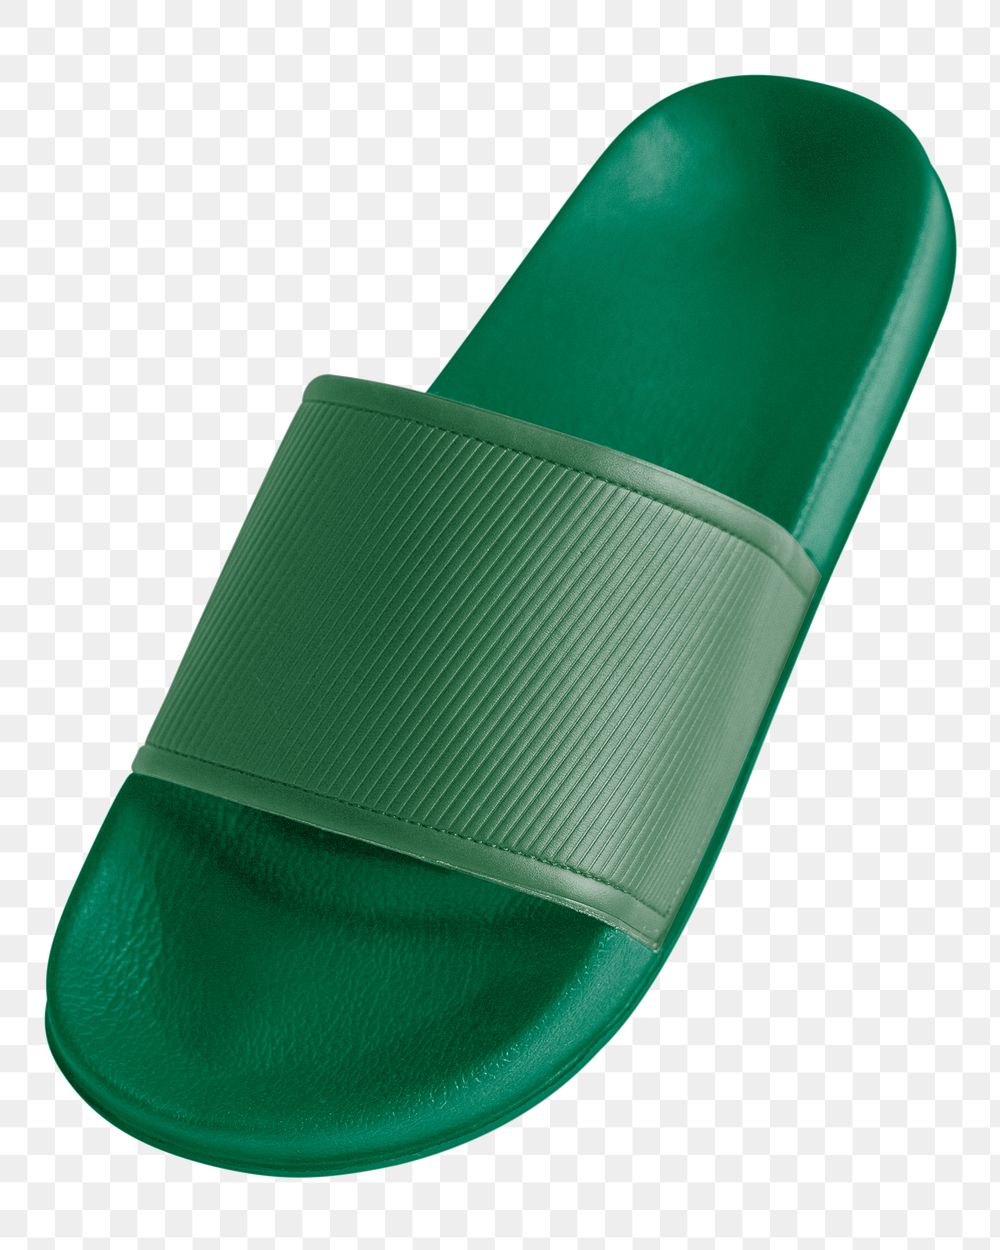 Green sandals png flip flop slippers, transparent background